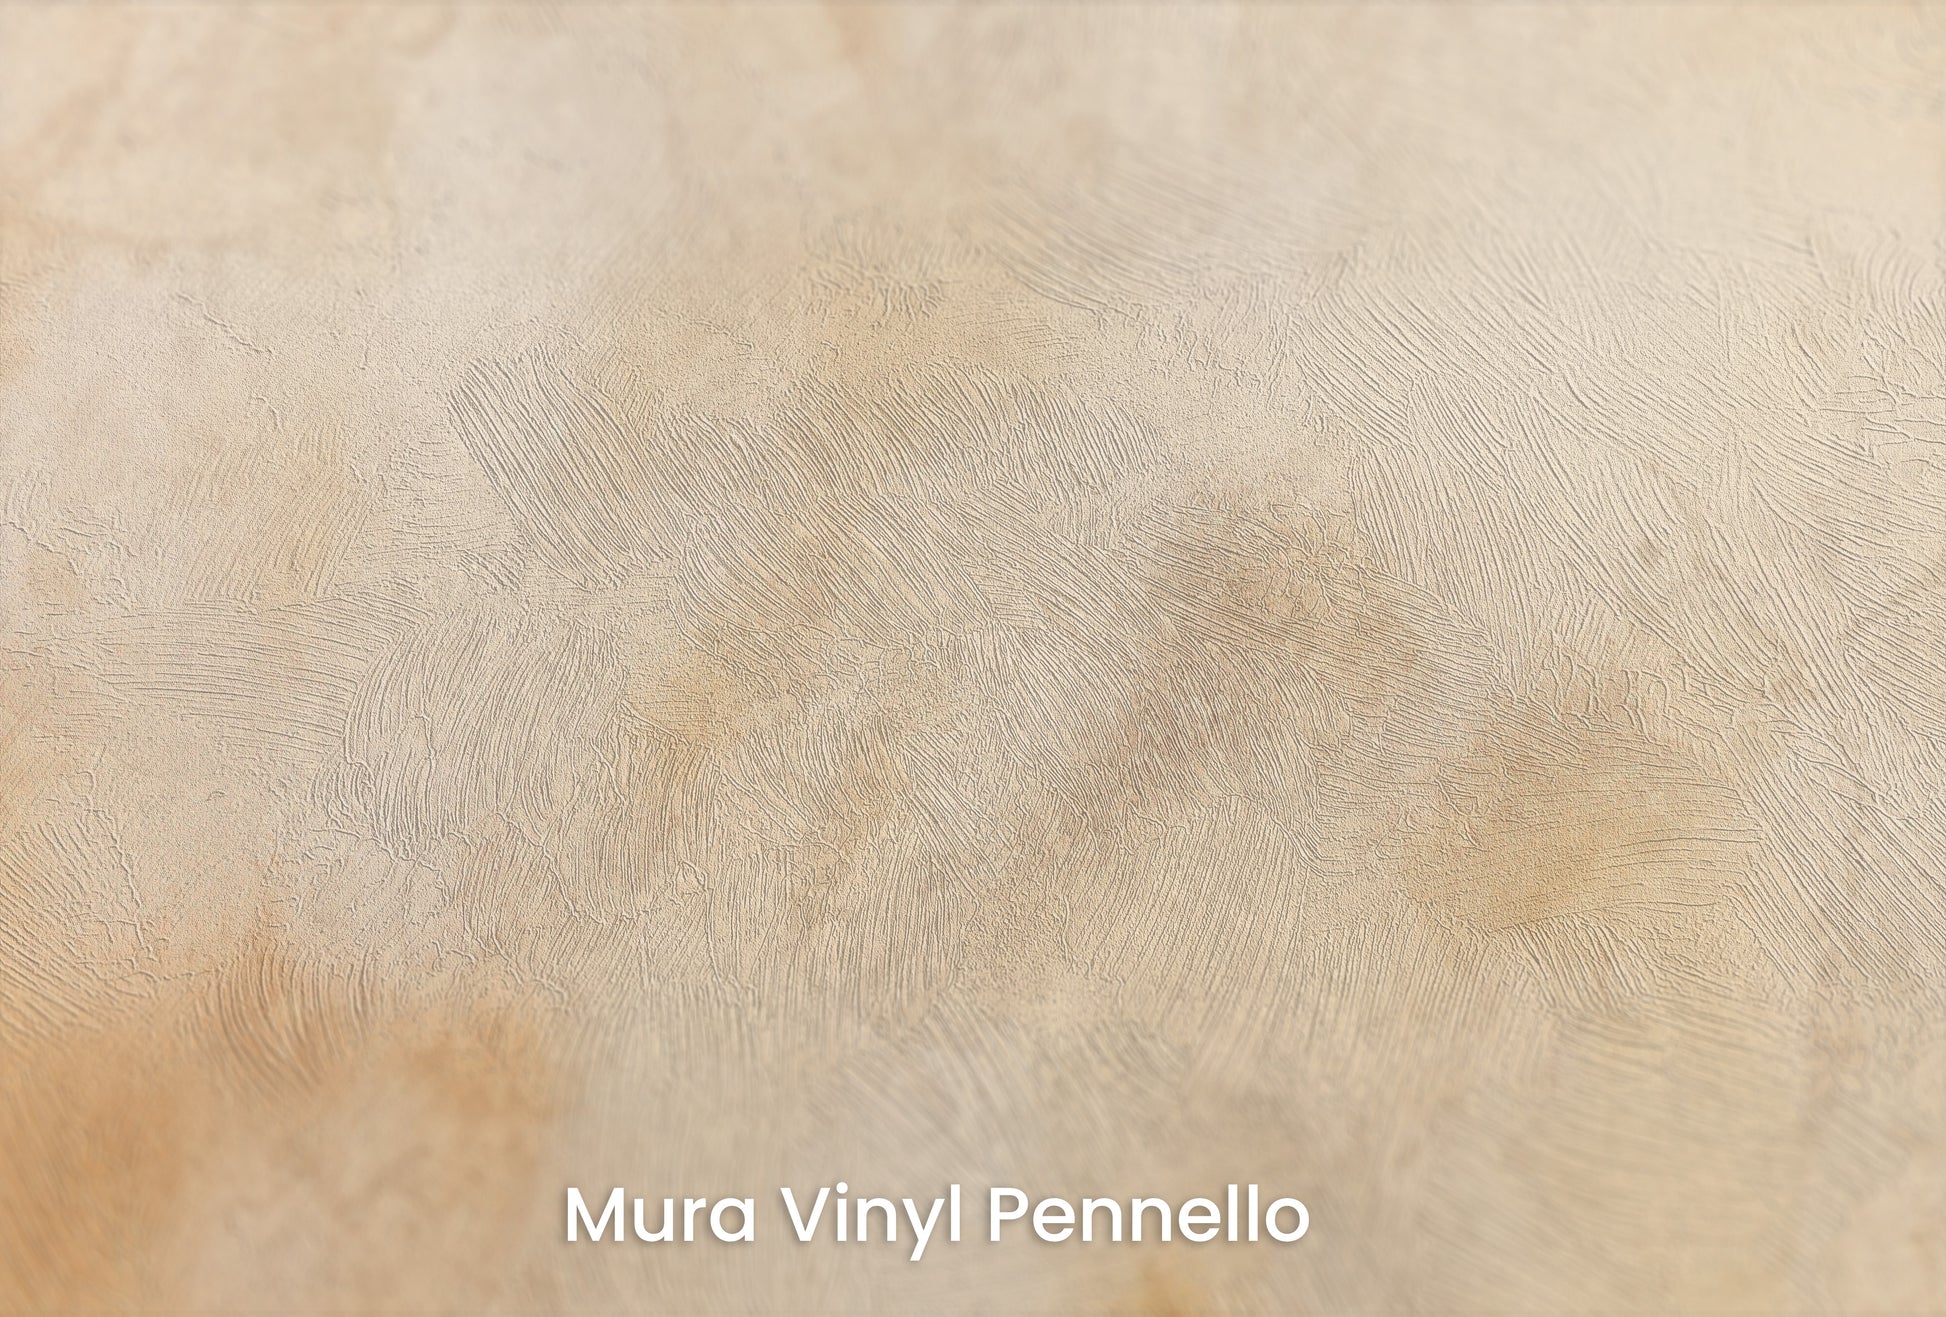 Zbliżenie na artystyczną fototapetę o nazwie ARCHAIC MAP OF DREAMS na podłożu Mura Vinyl Pennello - faktura pociągnięć pędzla malarskiego.